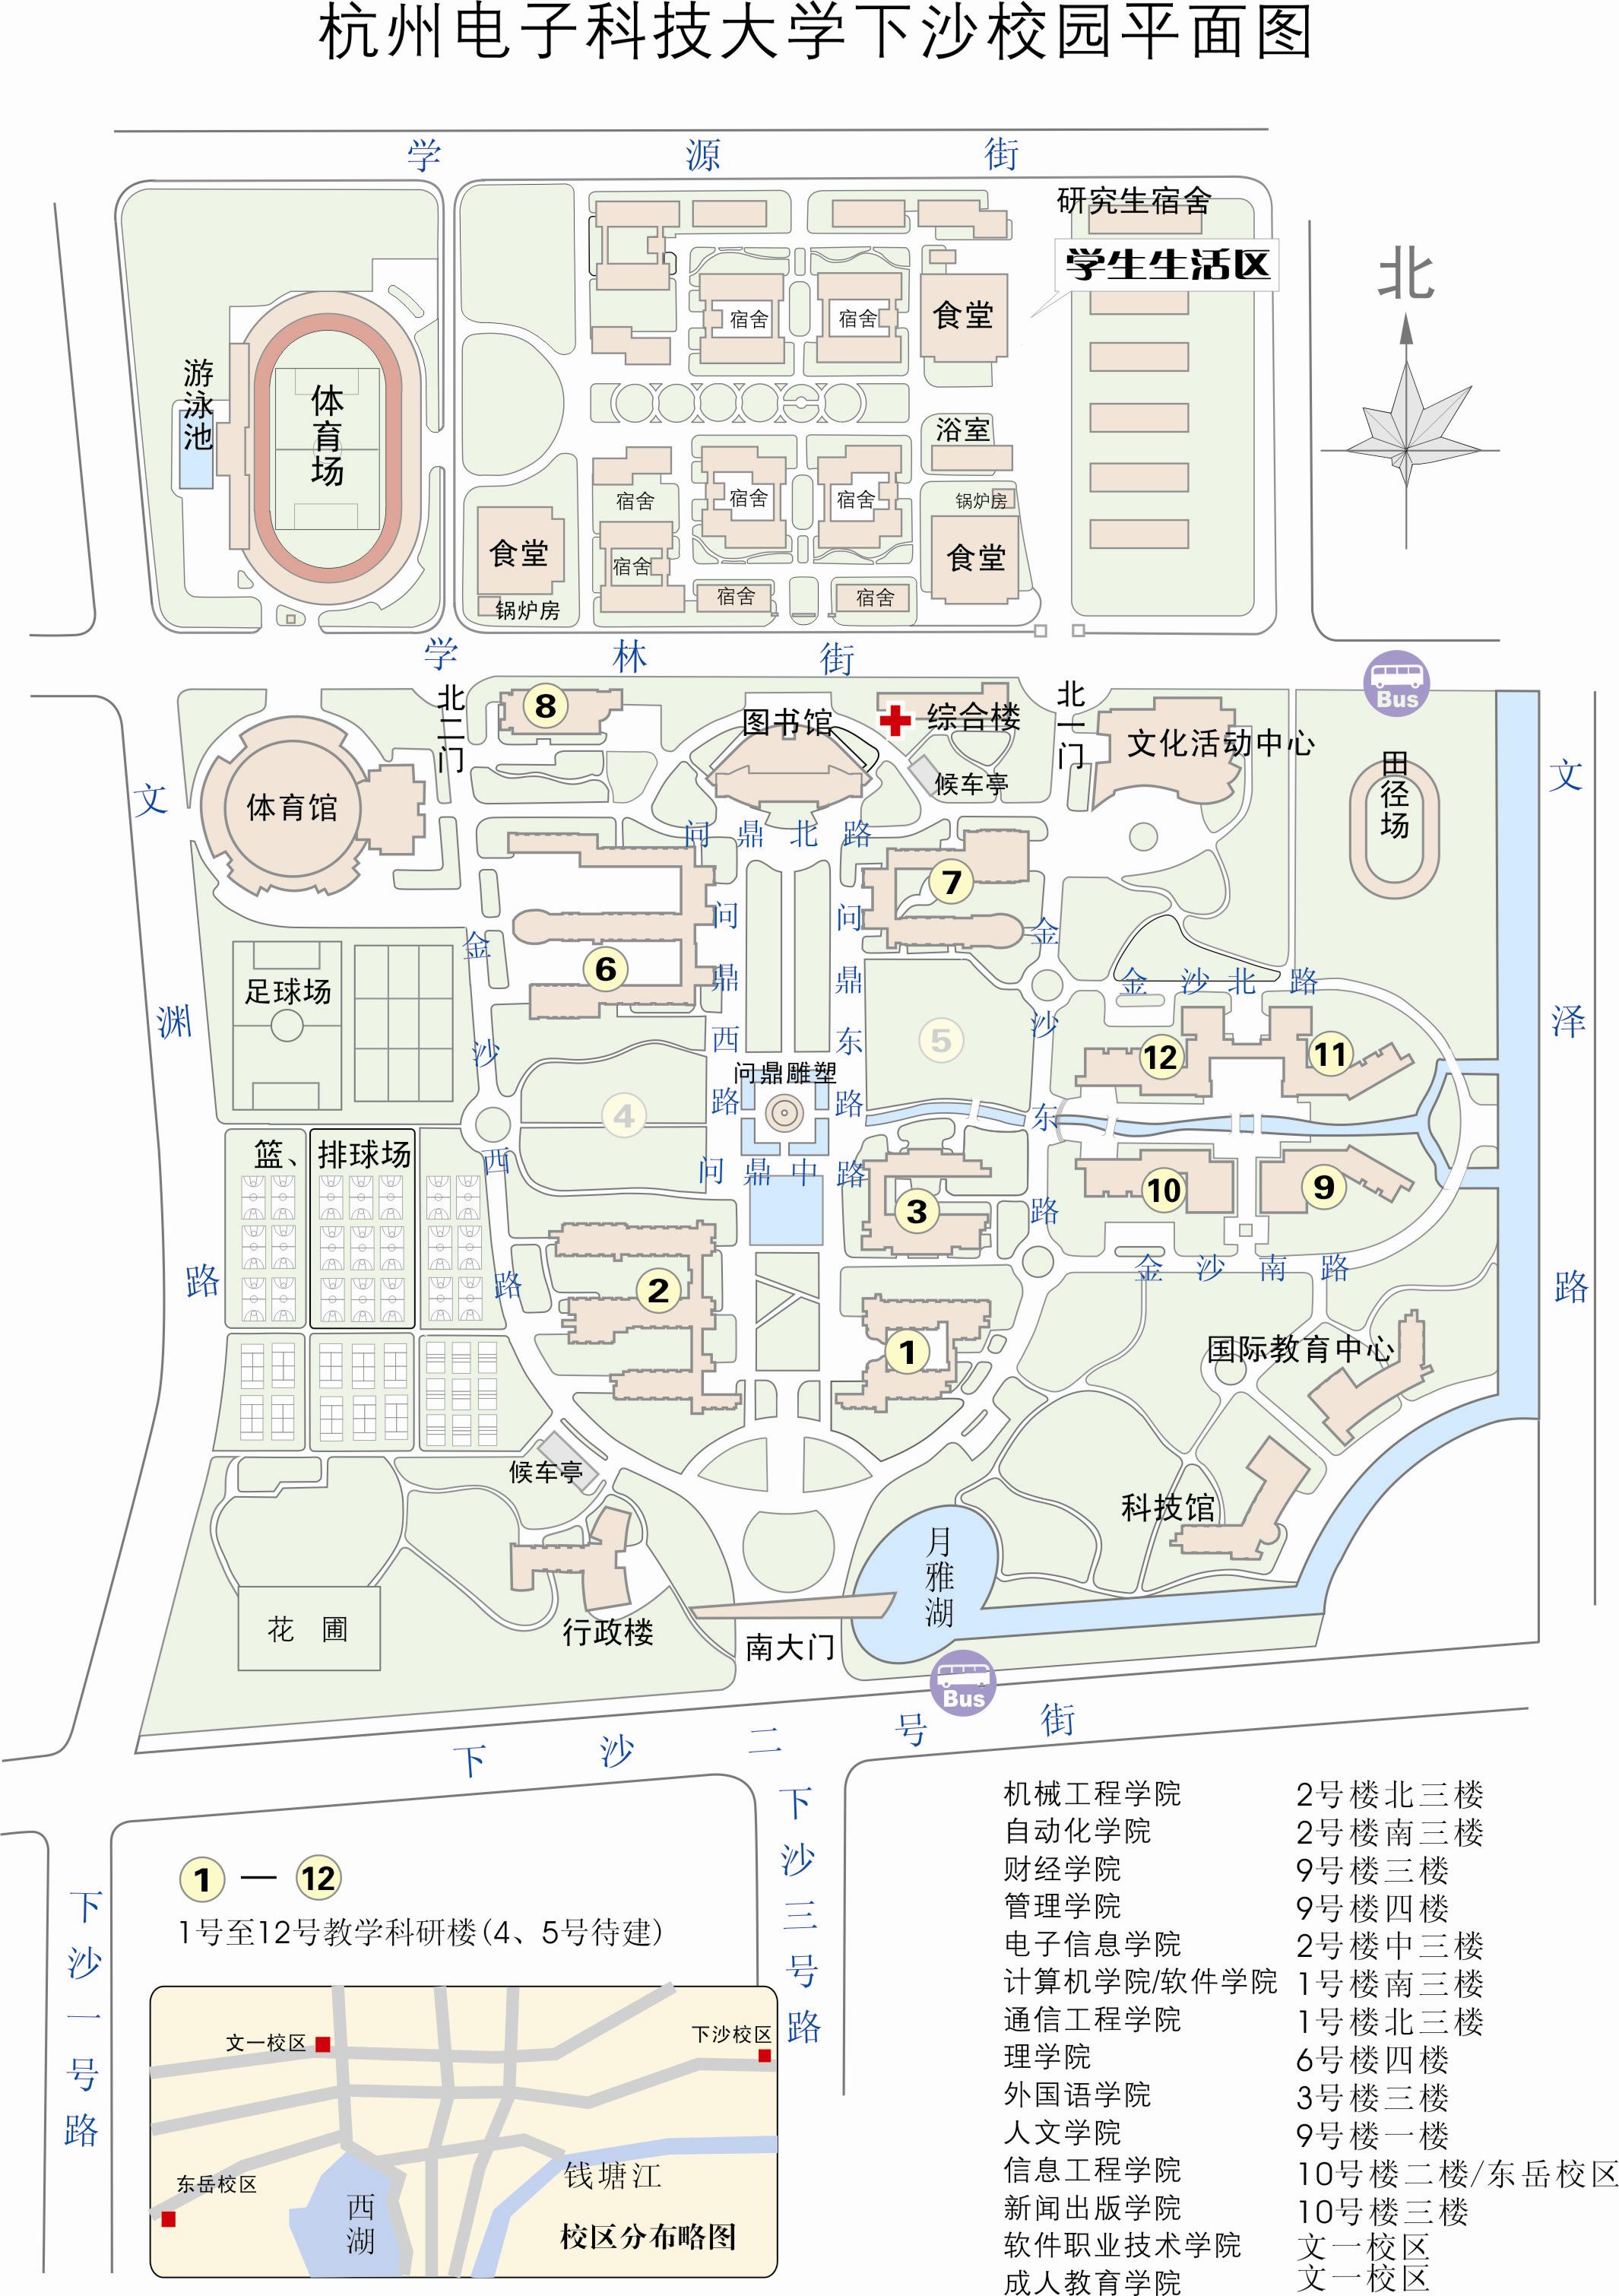 2017浙江一级建造师考场地址(杭州电子科技大学下沙校园平面图)图片